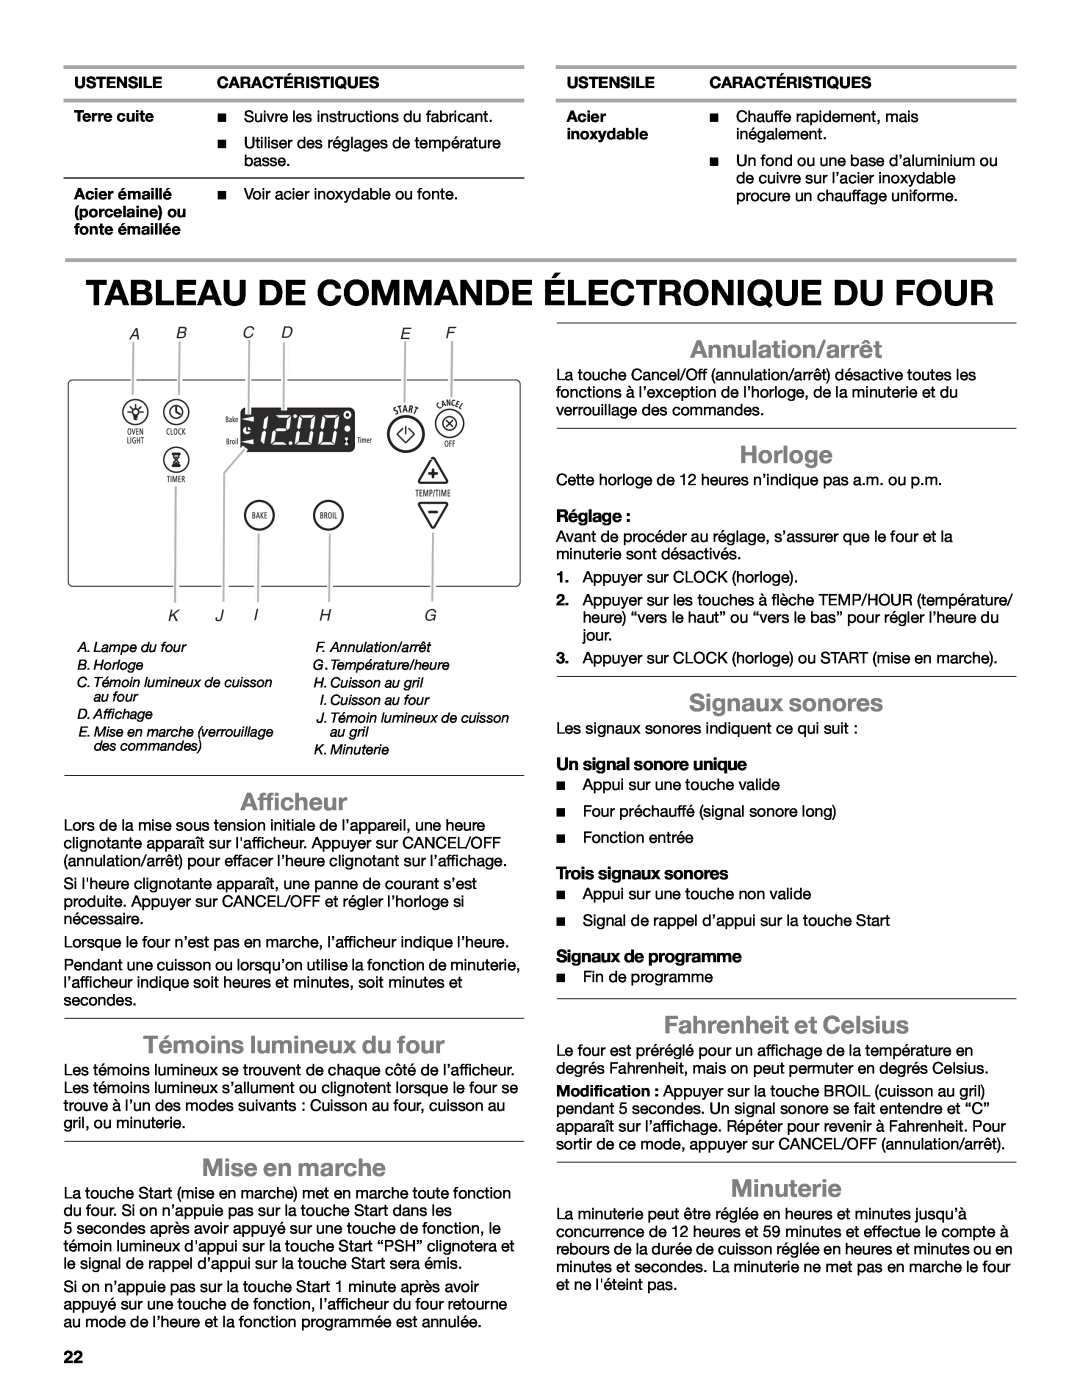 Whirlpool WFG231LVS manual Tableau De Commande Électronique Du Four, Annulation/arrêt, Horloge, Signaux sonores, Afficheur 